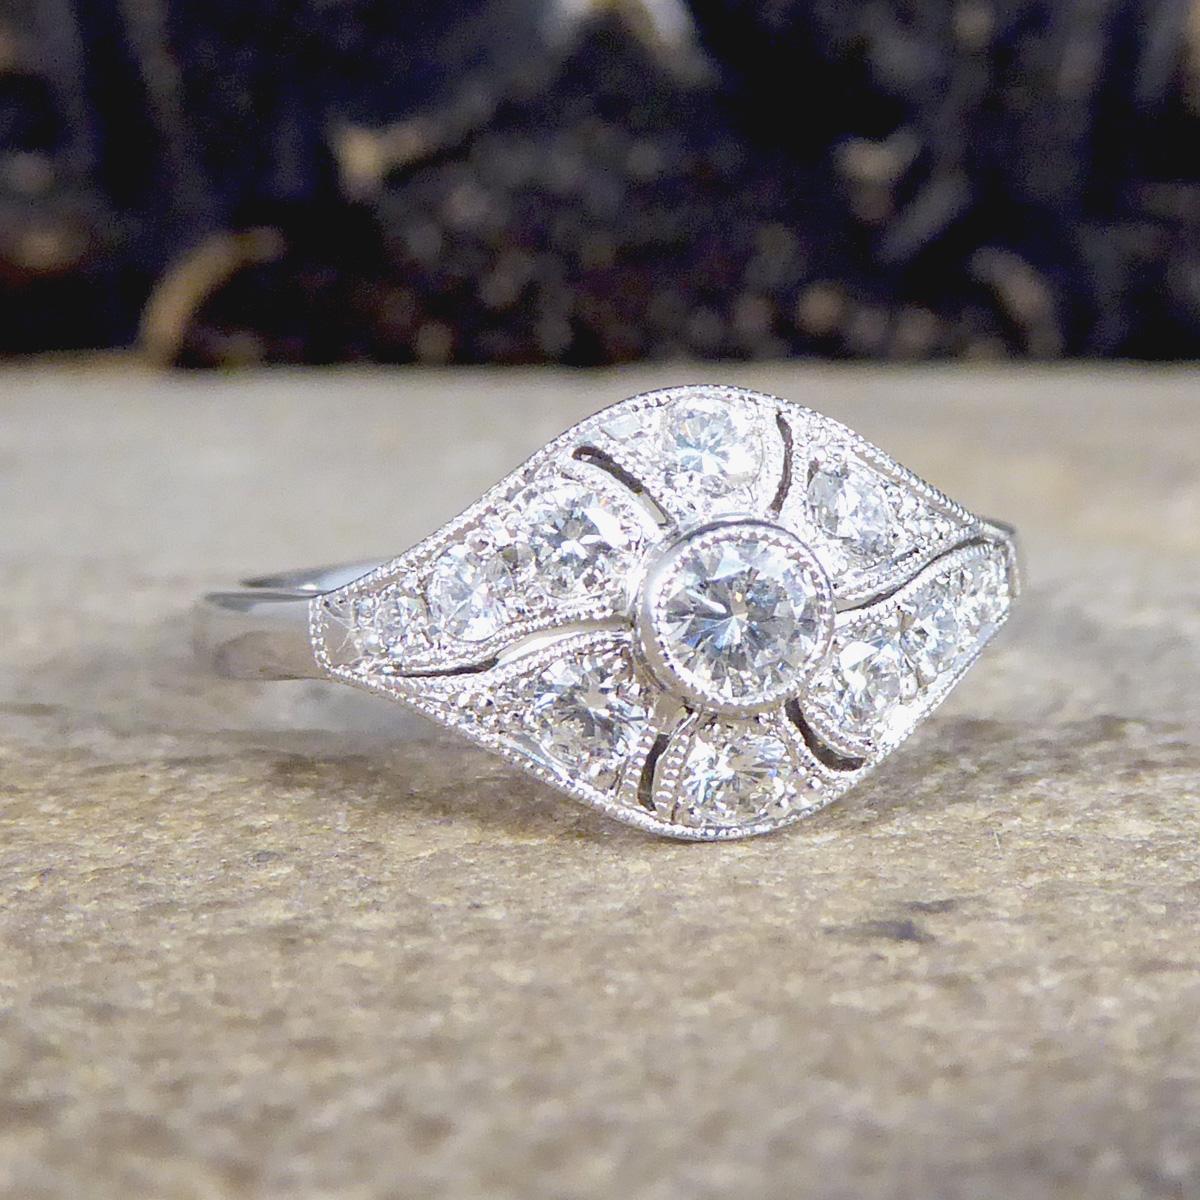 Dieser atemberaubende Ring wurde von Hand gefertigt und ist neu und ungetragen. Er wurde so entworfen und sorgfältig gefertigt, dass er einem Ring im Art-Déco-Stil ähnelt, mit einem kragenförmig gefassten Diamanten im Brillantschliff in der Mitte,